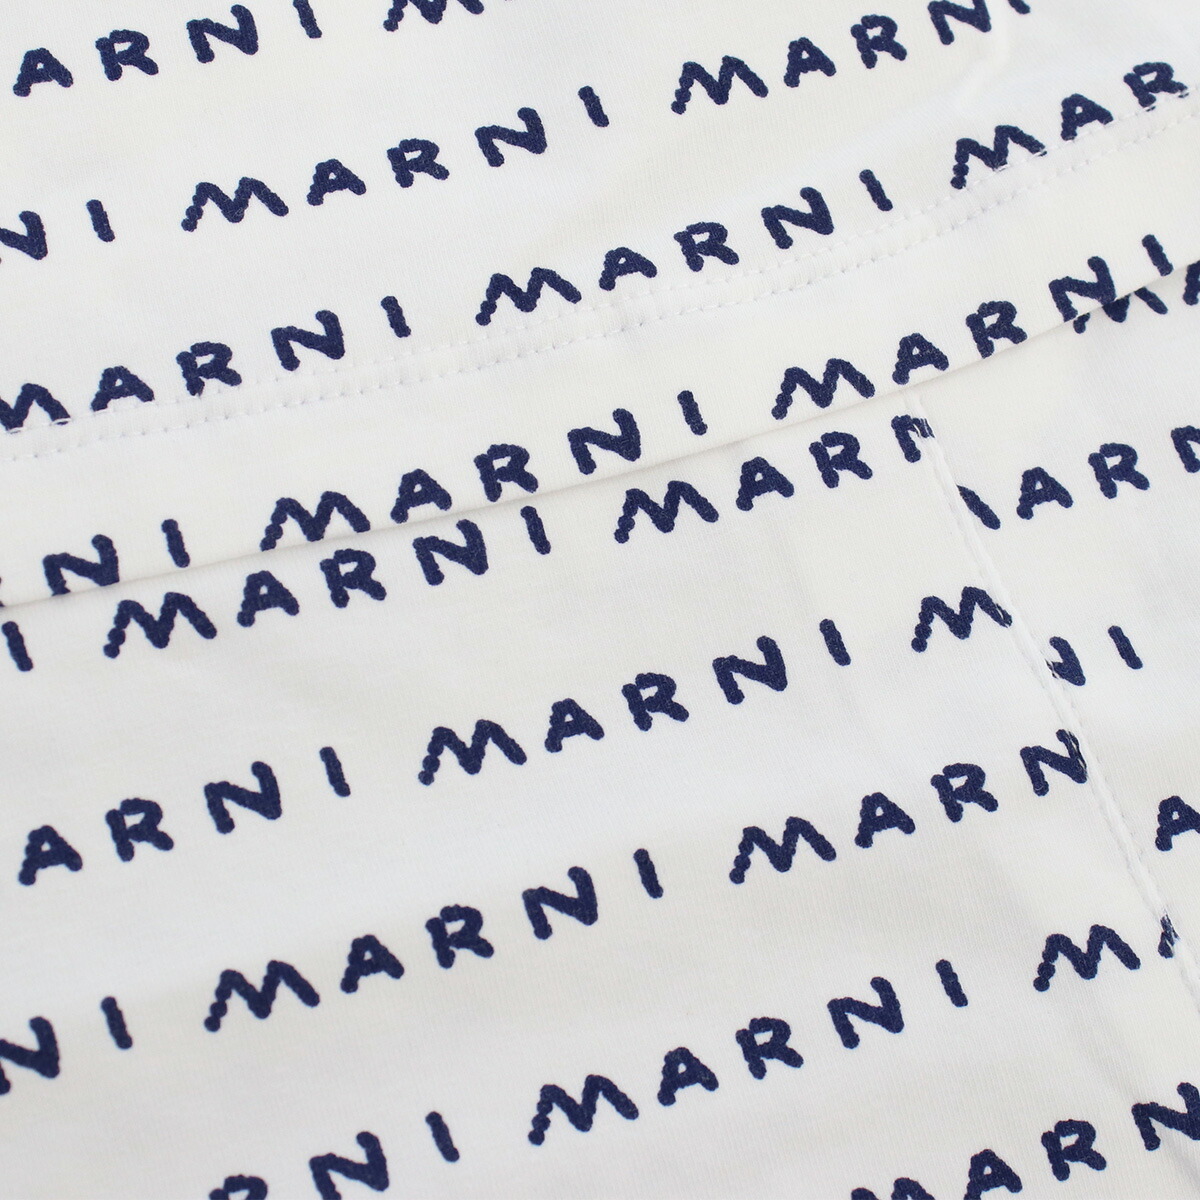 Armerie Boutique / マルニ MARNI ベビー ワンピース ブランド ロゴ